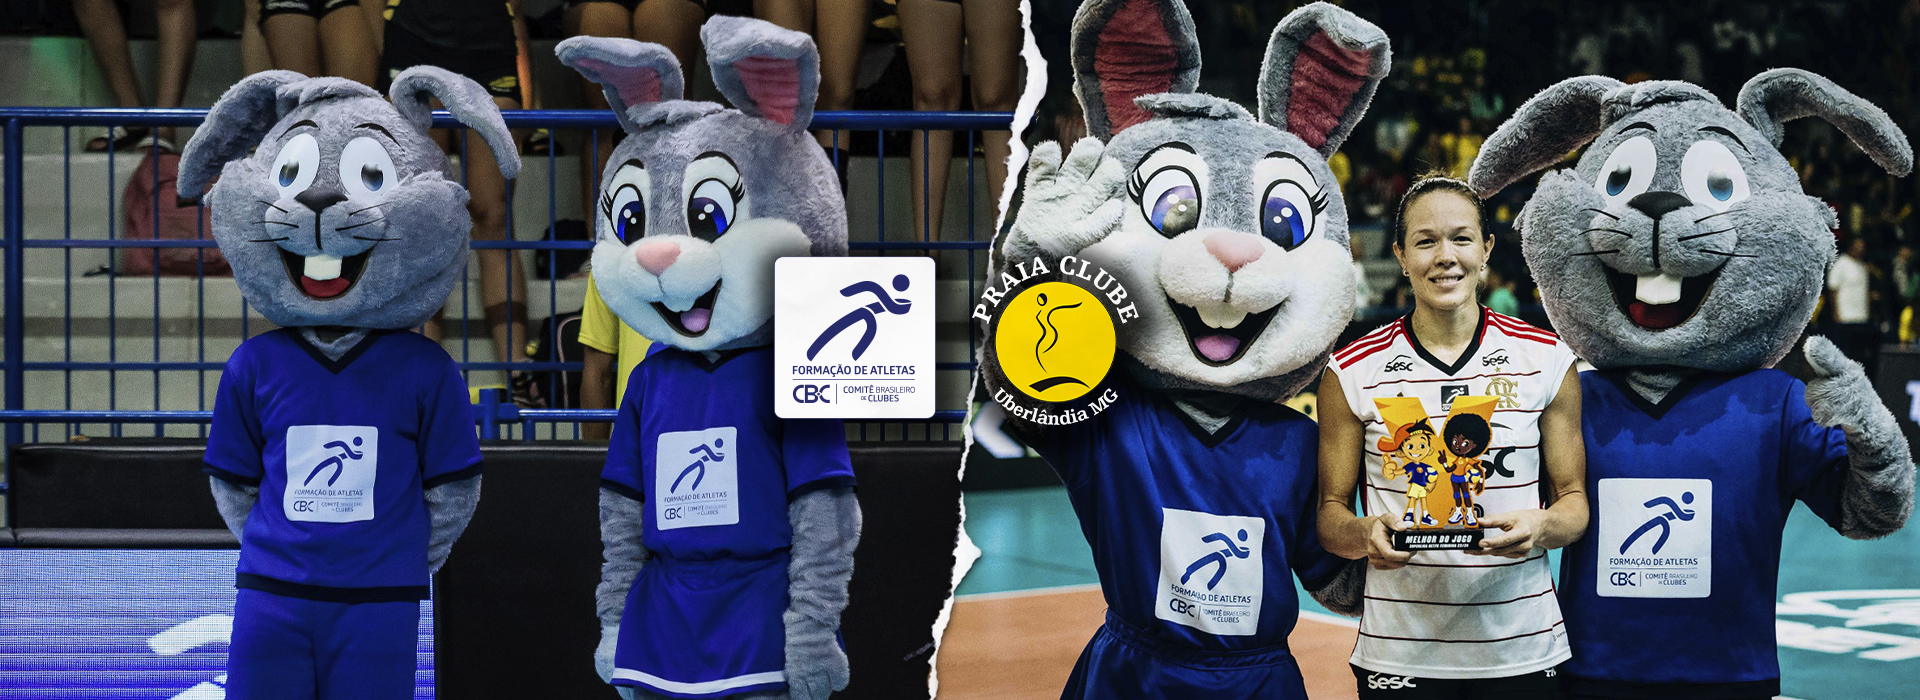 Praia Clube-MG promove megaevento com as mascotes do CBC durante rodada da Superliga de Voleibol